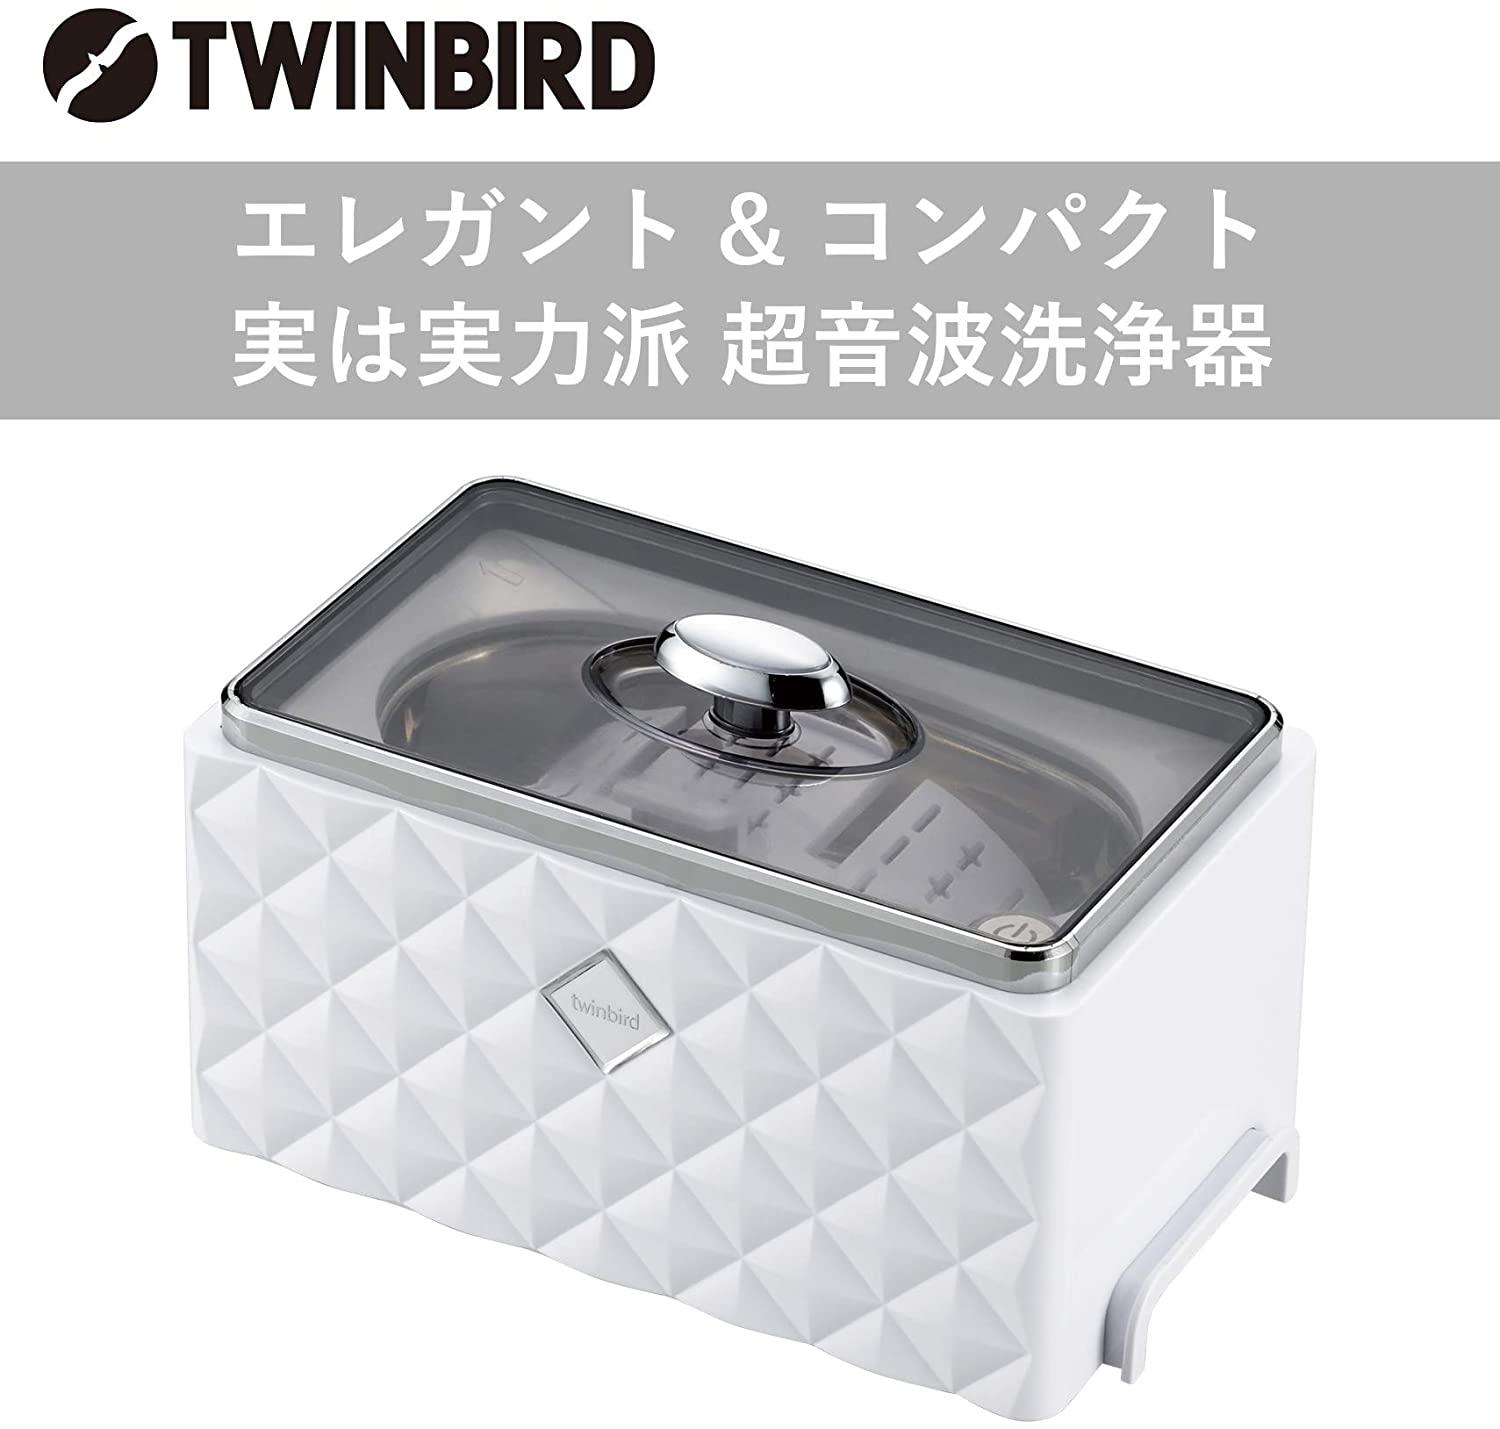 日本公司貨 空運 TWINBIRD 雙鳥牌 EC-4548W 超音波 清洗機 洗淨器 洗眼鏡 手錶 首飾 項鍊 金屬製品